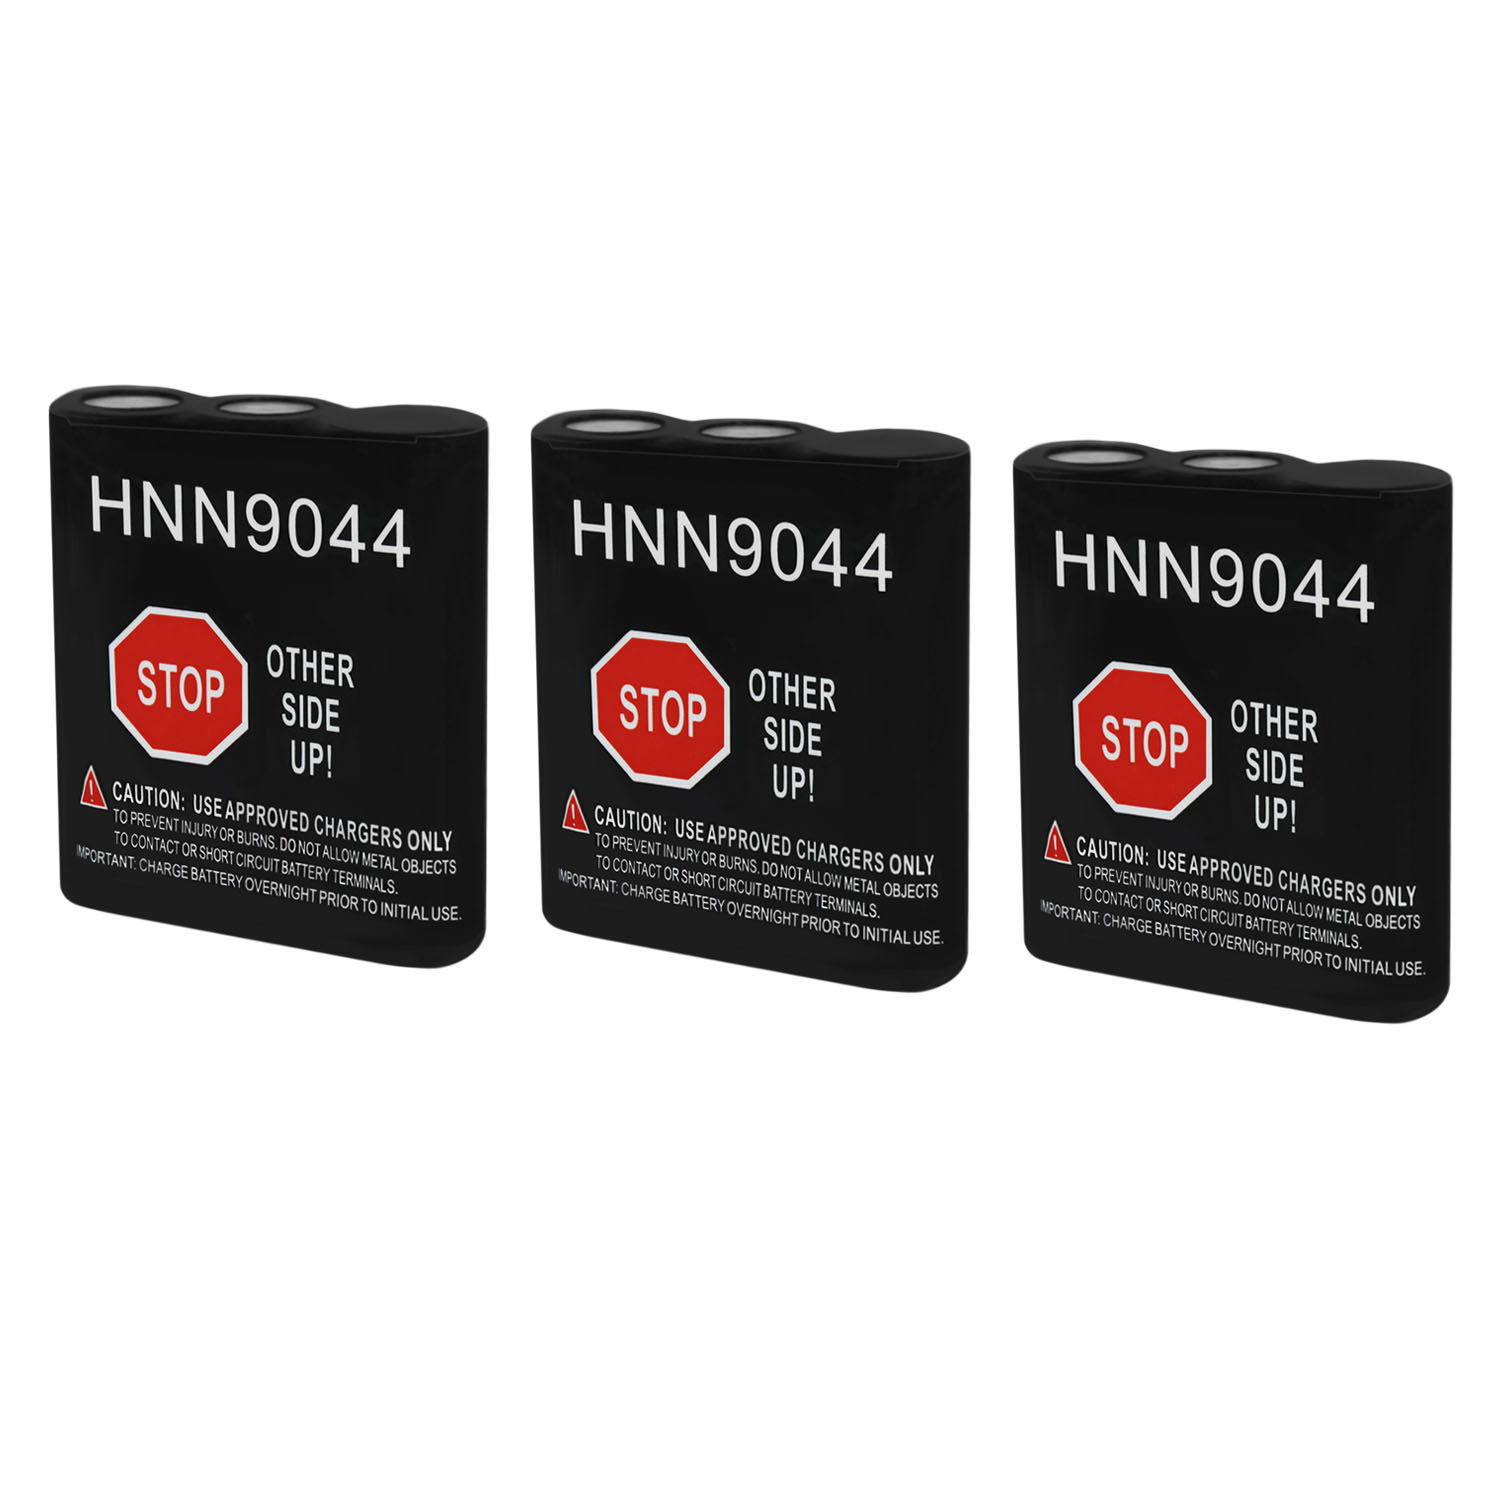 HNN9044 Replacement for Motorola HNN9044A, HNN9044AR - 3 Pack